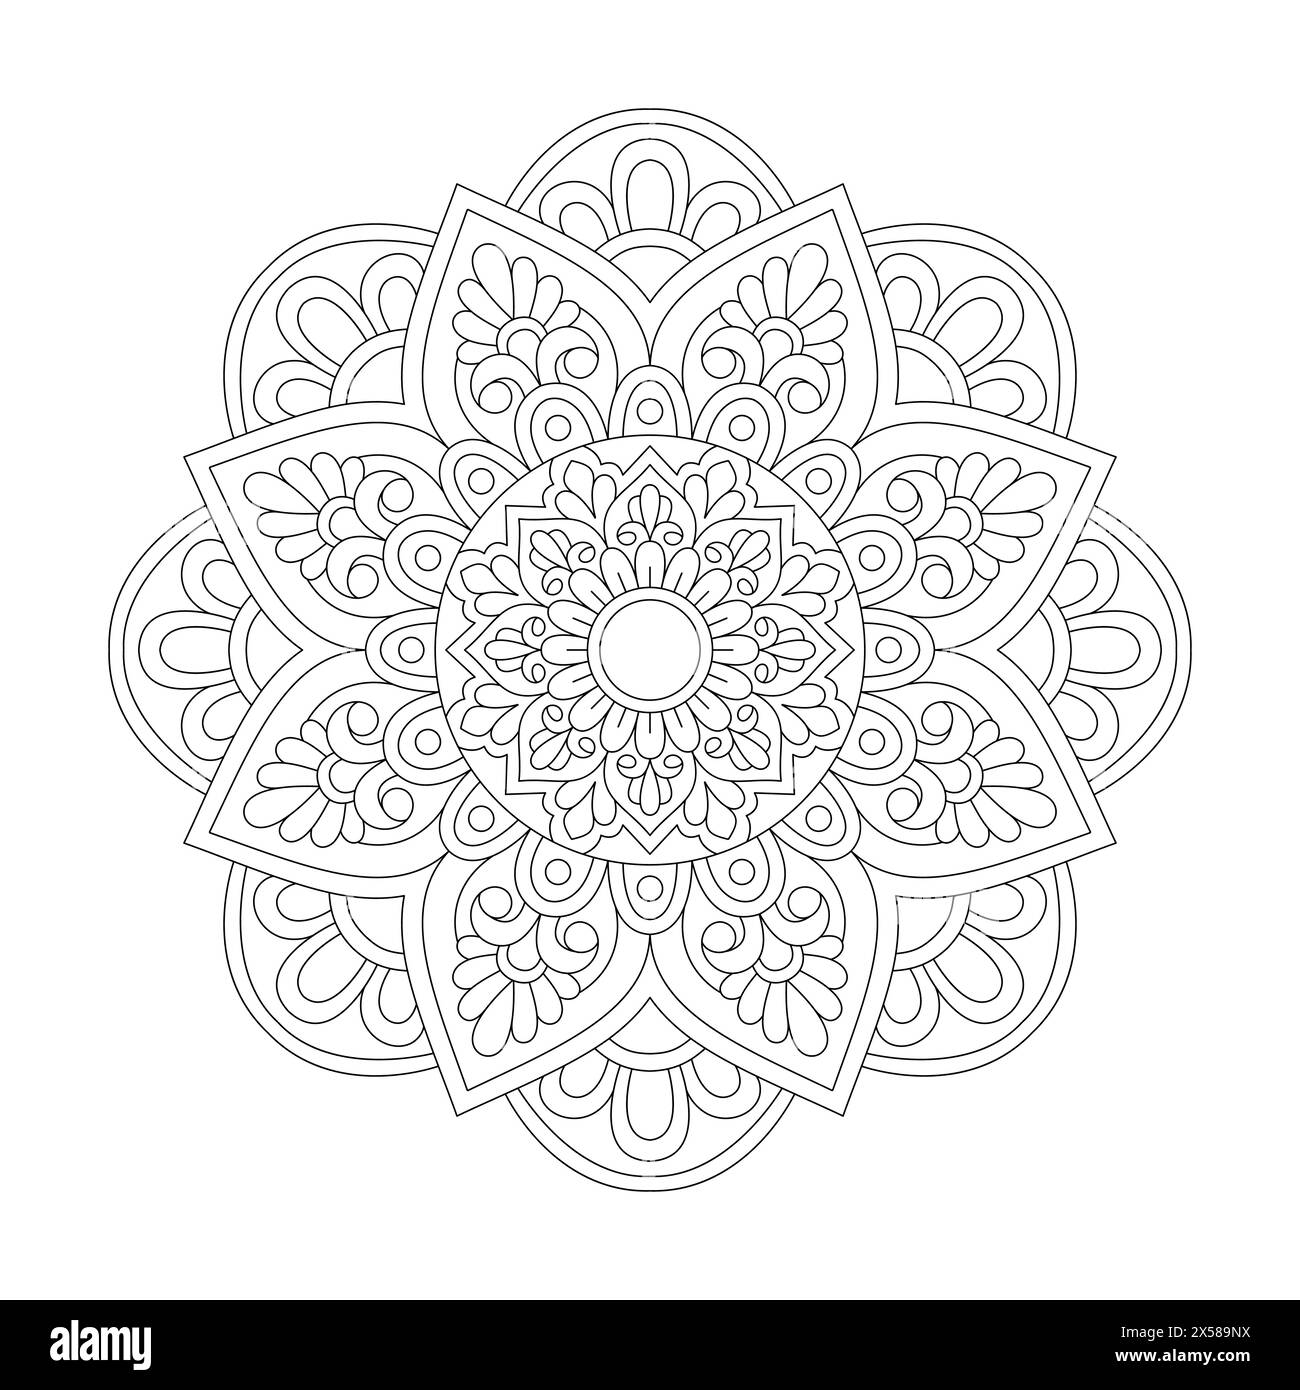 Pagina libro da colorare Mandala Spirited Symmetry per interno libro kdp. Petali tranquilli, capacità di rilassarsi, esperienze cerebrali, Harmonous Haven, Peaceful P Illustrazione Vettoriale